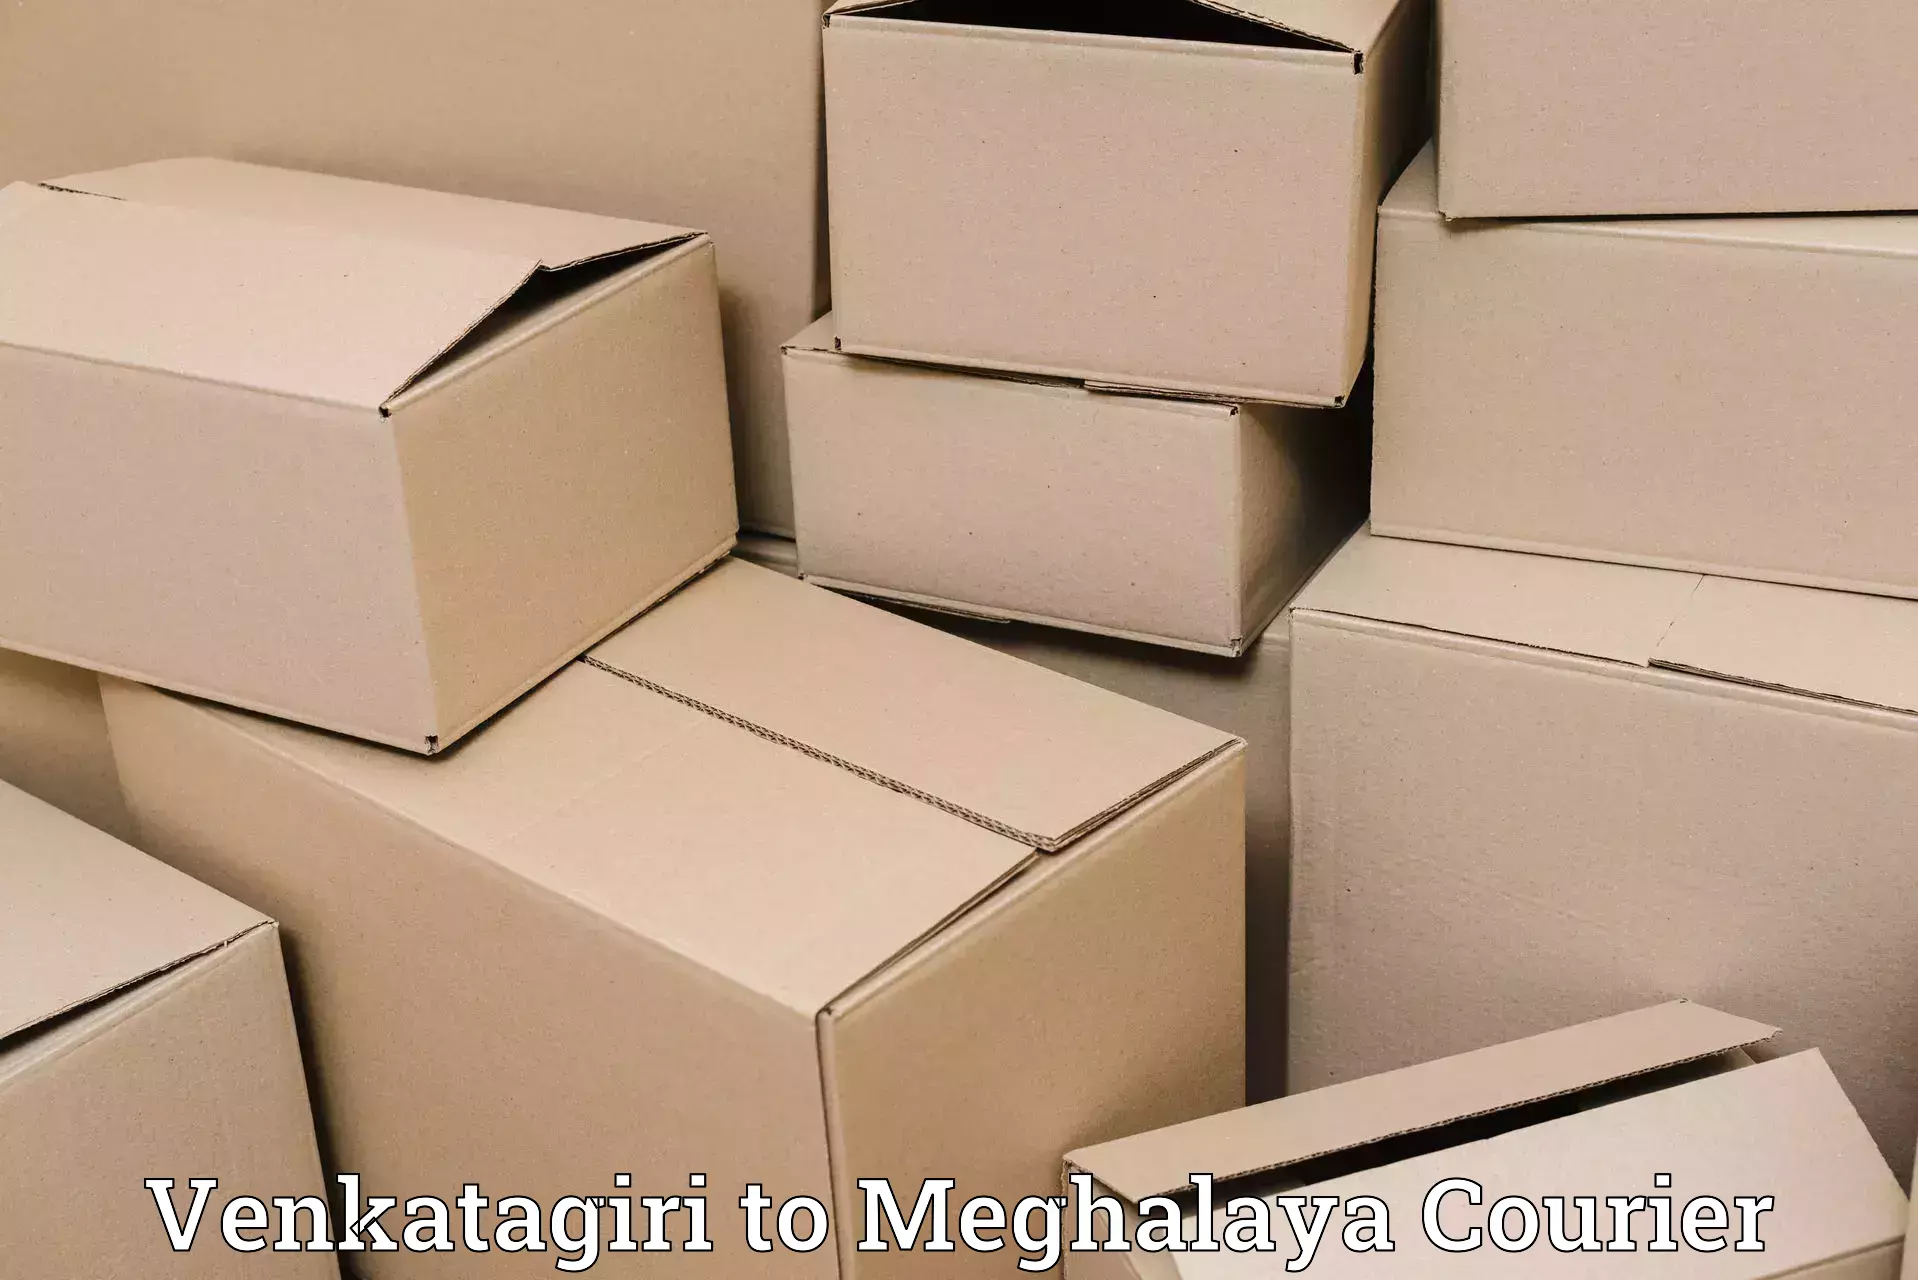 Baggage delivery scheduling Venkatagiri to Meghalaya